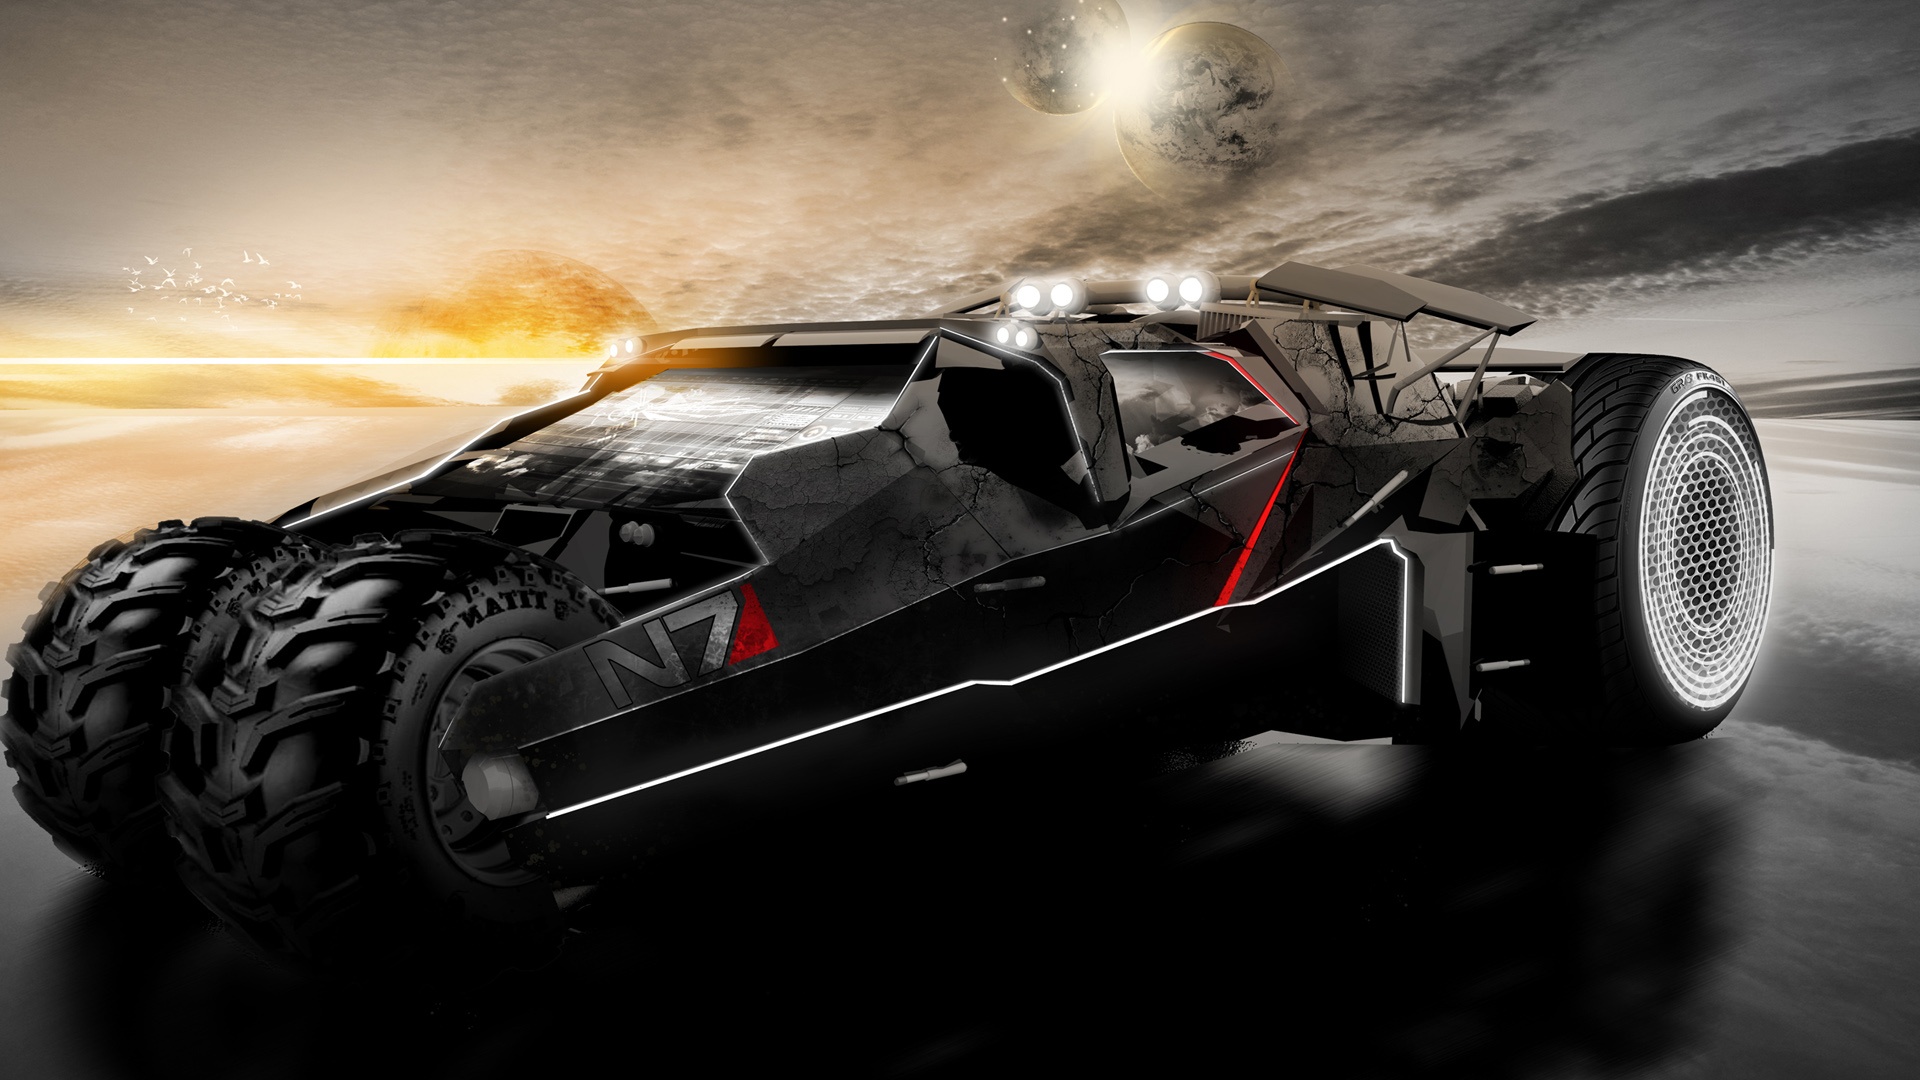 Full HD Wallpaper Mass Effect All Terrain Vehicle Batman Art